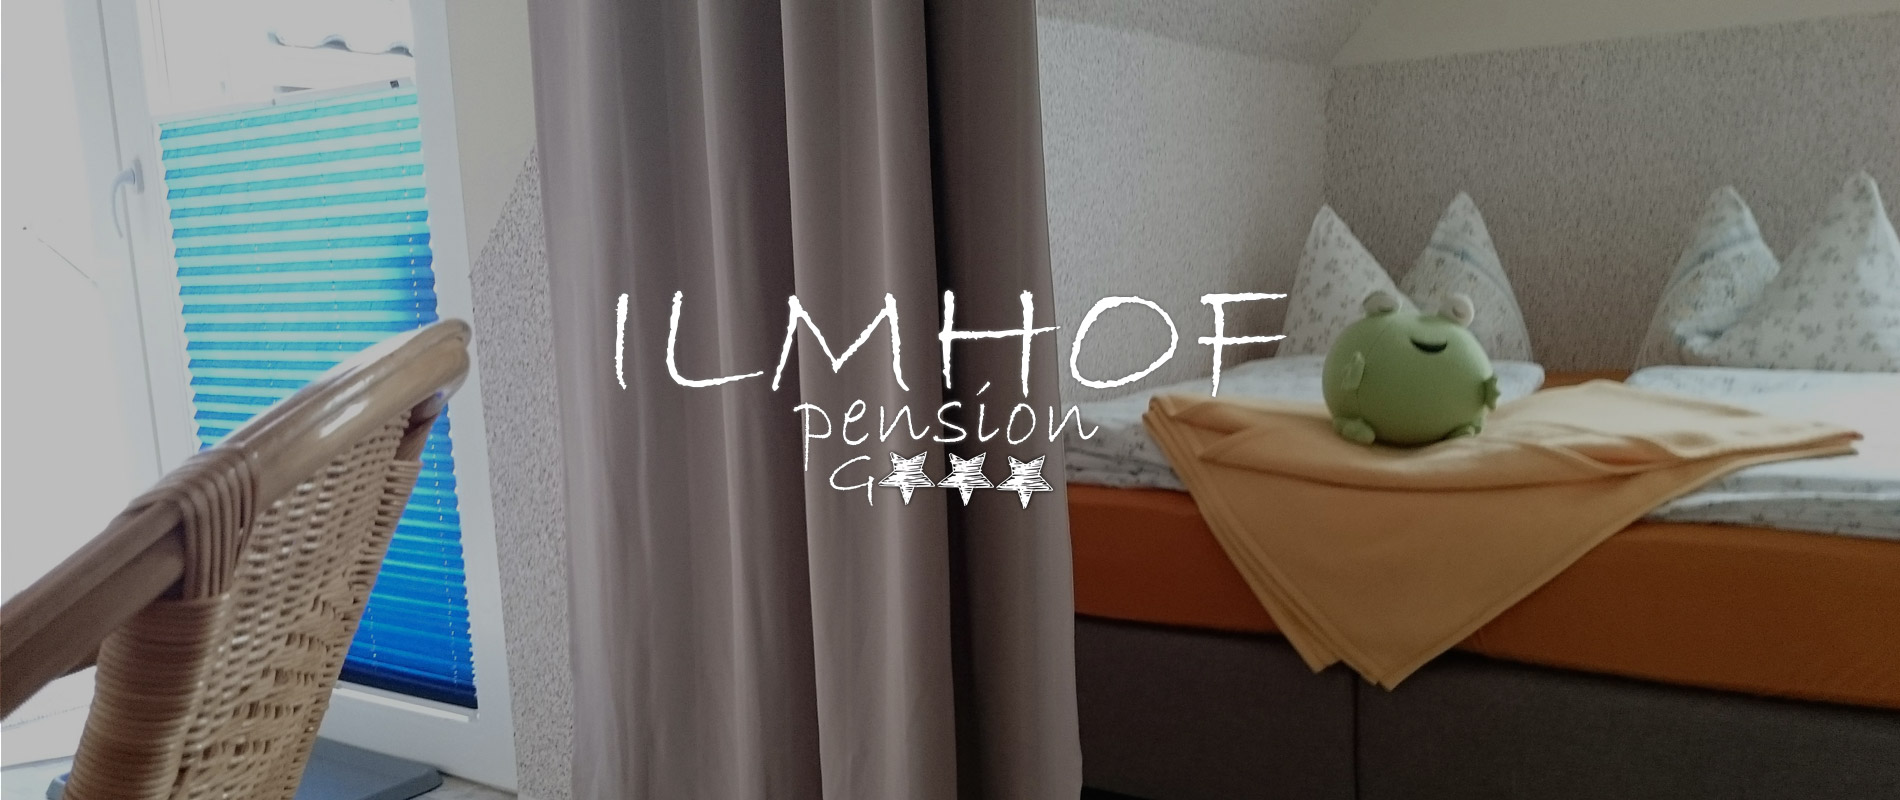 Pension Ilmhof in Bad Berka im Weimarer Land - www.ilmhof.de - urlaub in Weimarer Land in Thüringen